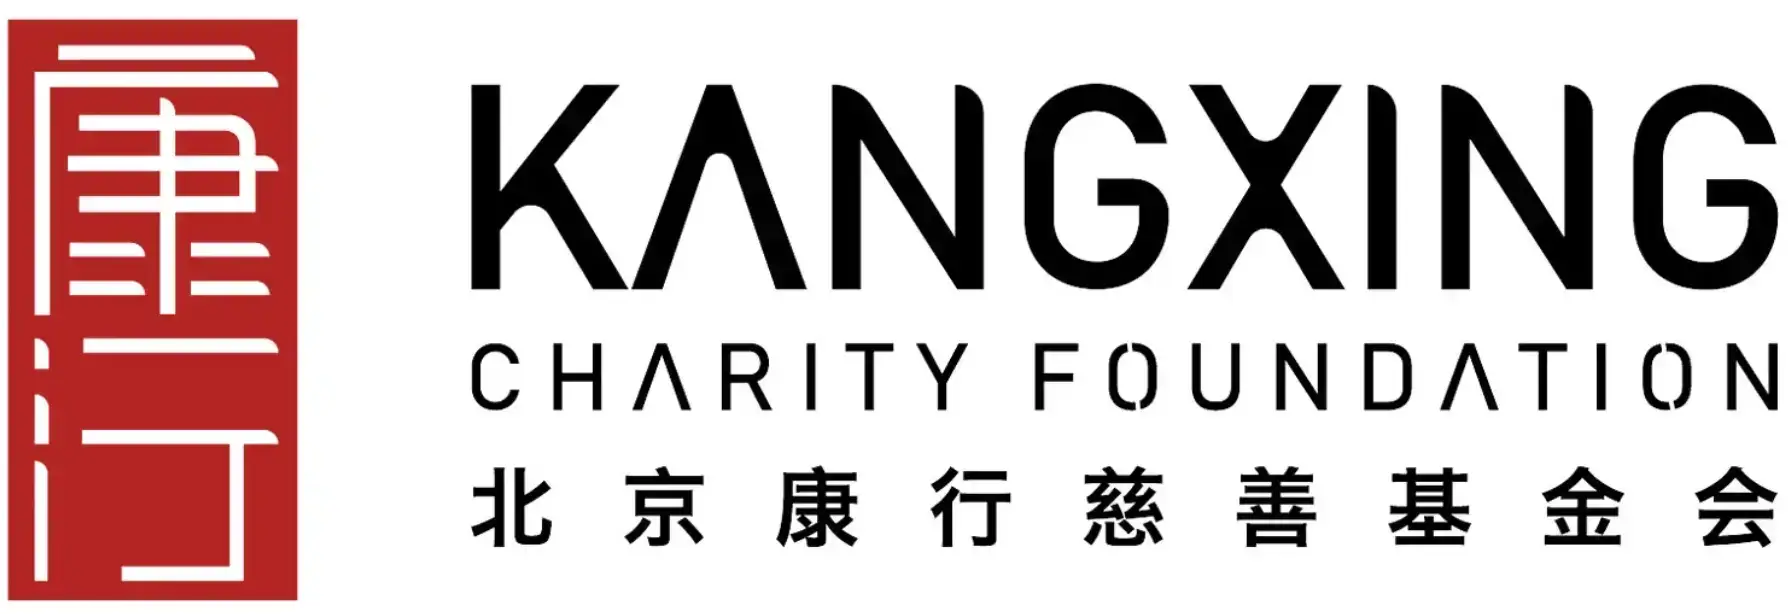 北京康行慈善基金会